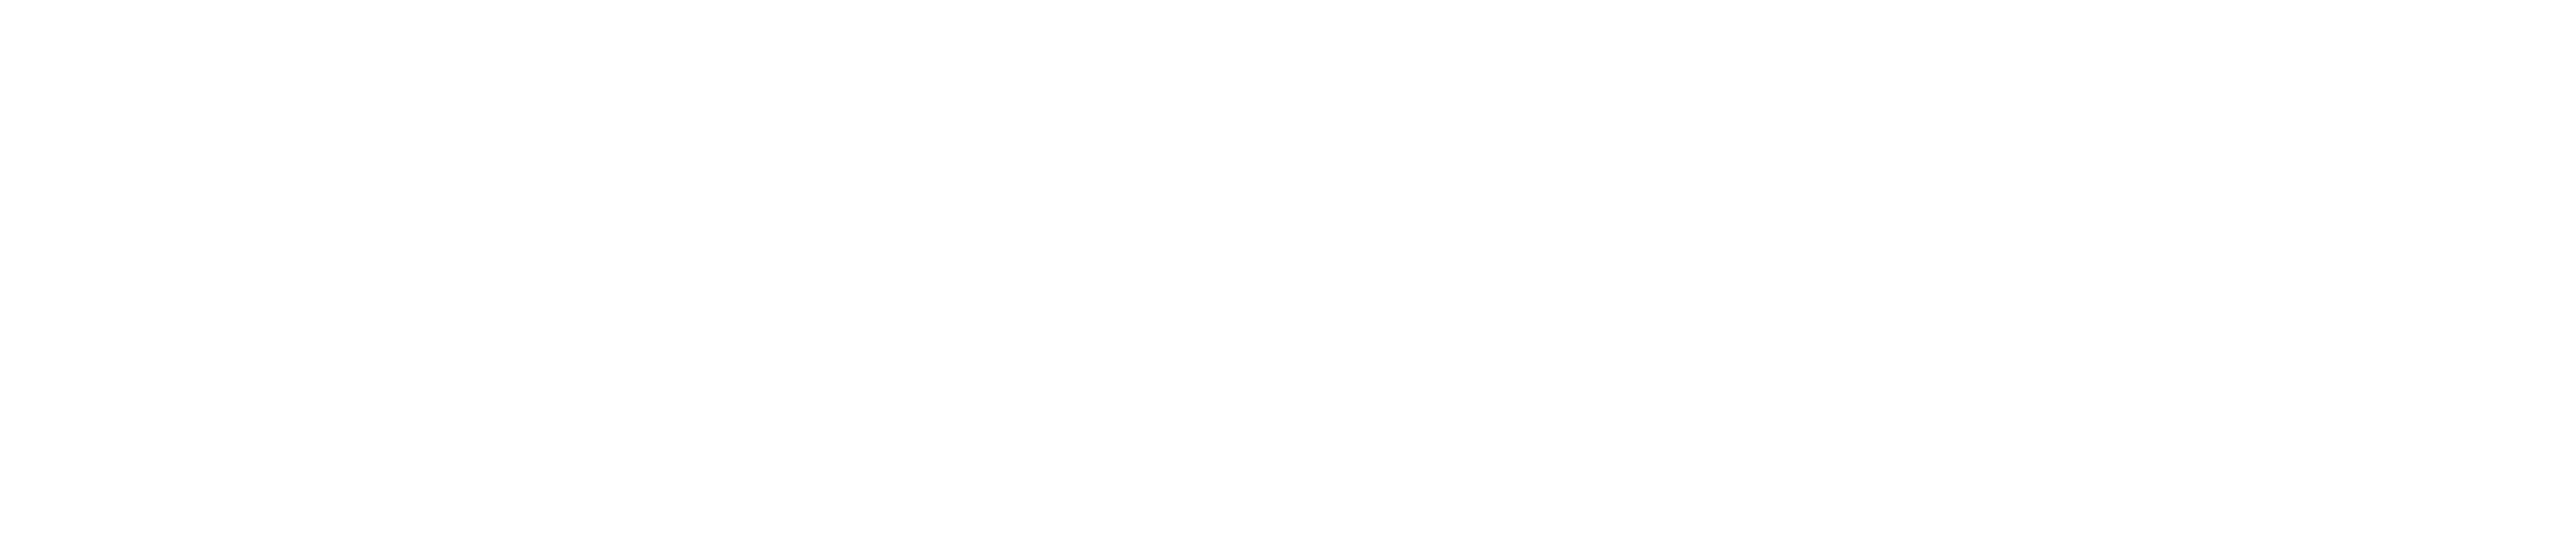 mind information logo